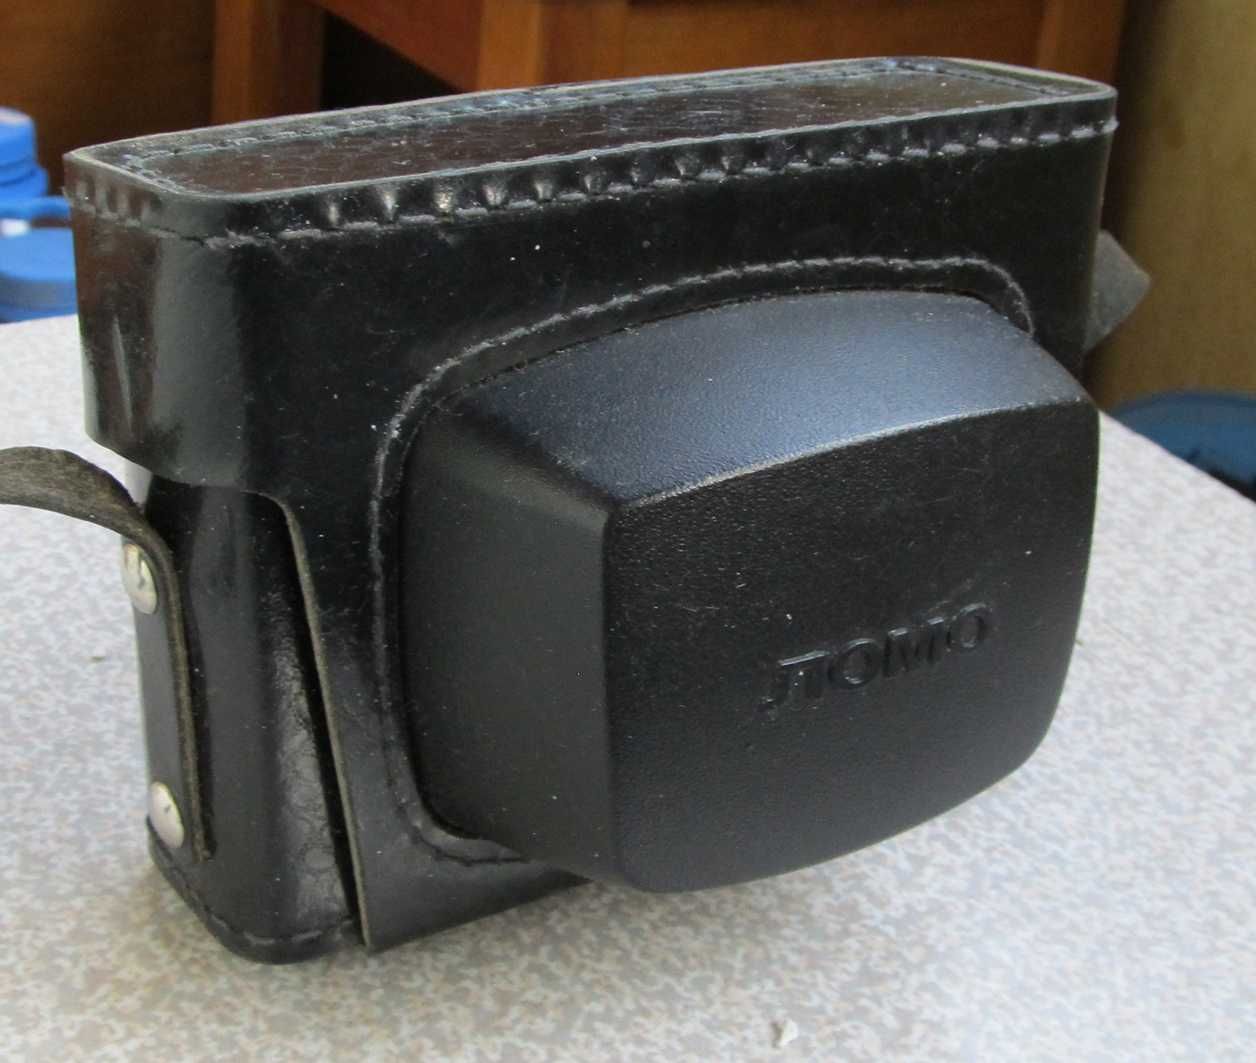 Продается Плёночный фотоаппарат Смена 8 М (ретро СССР)